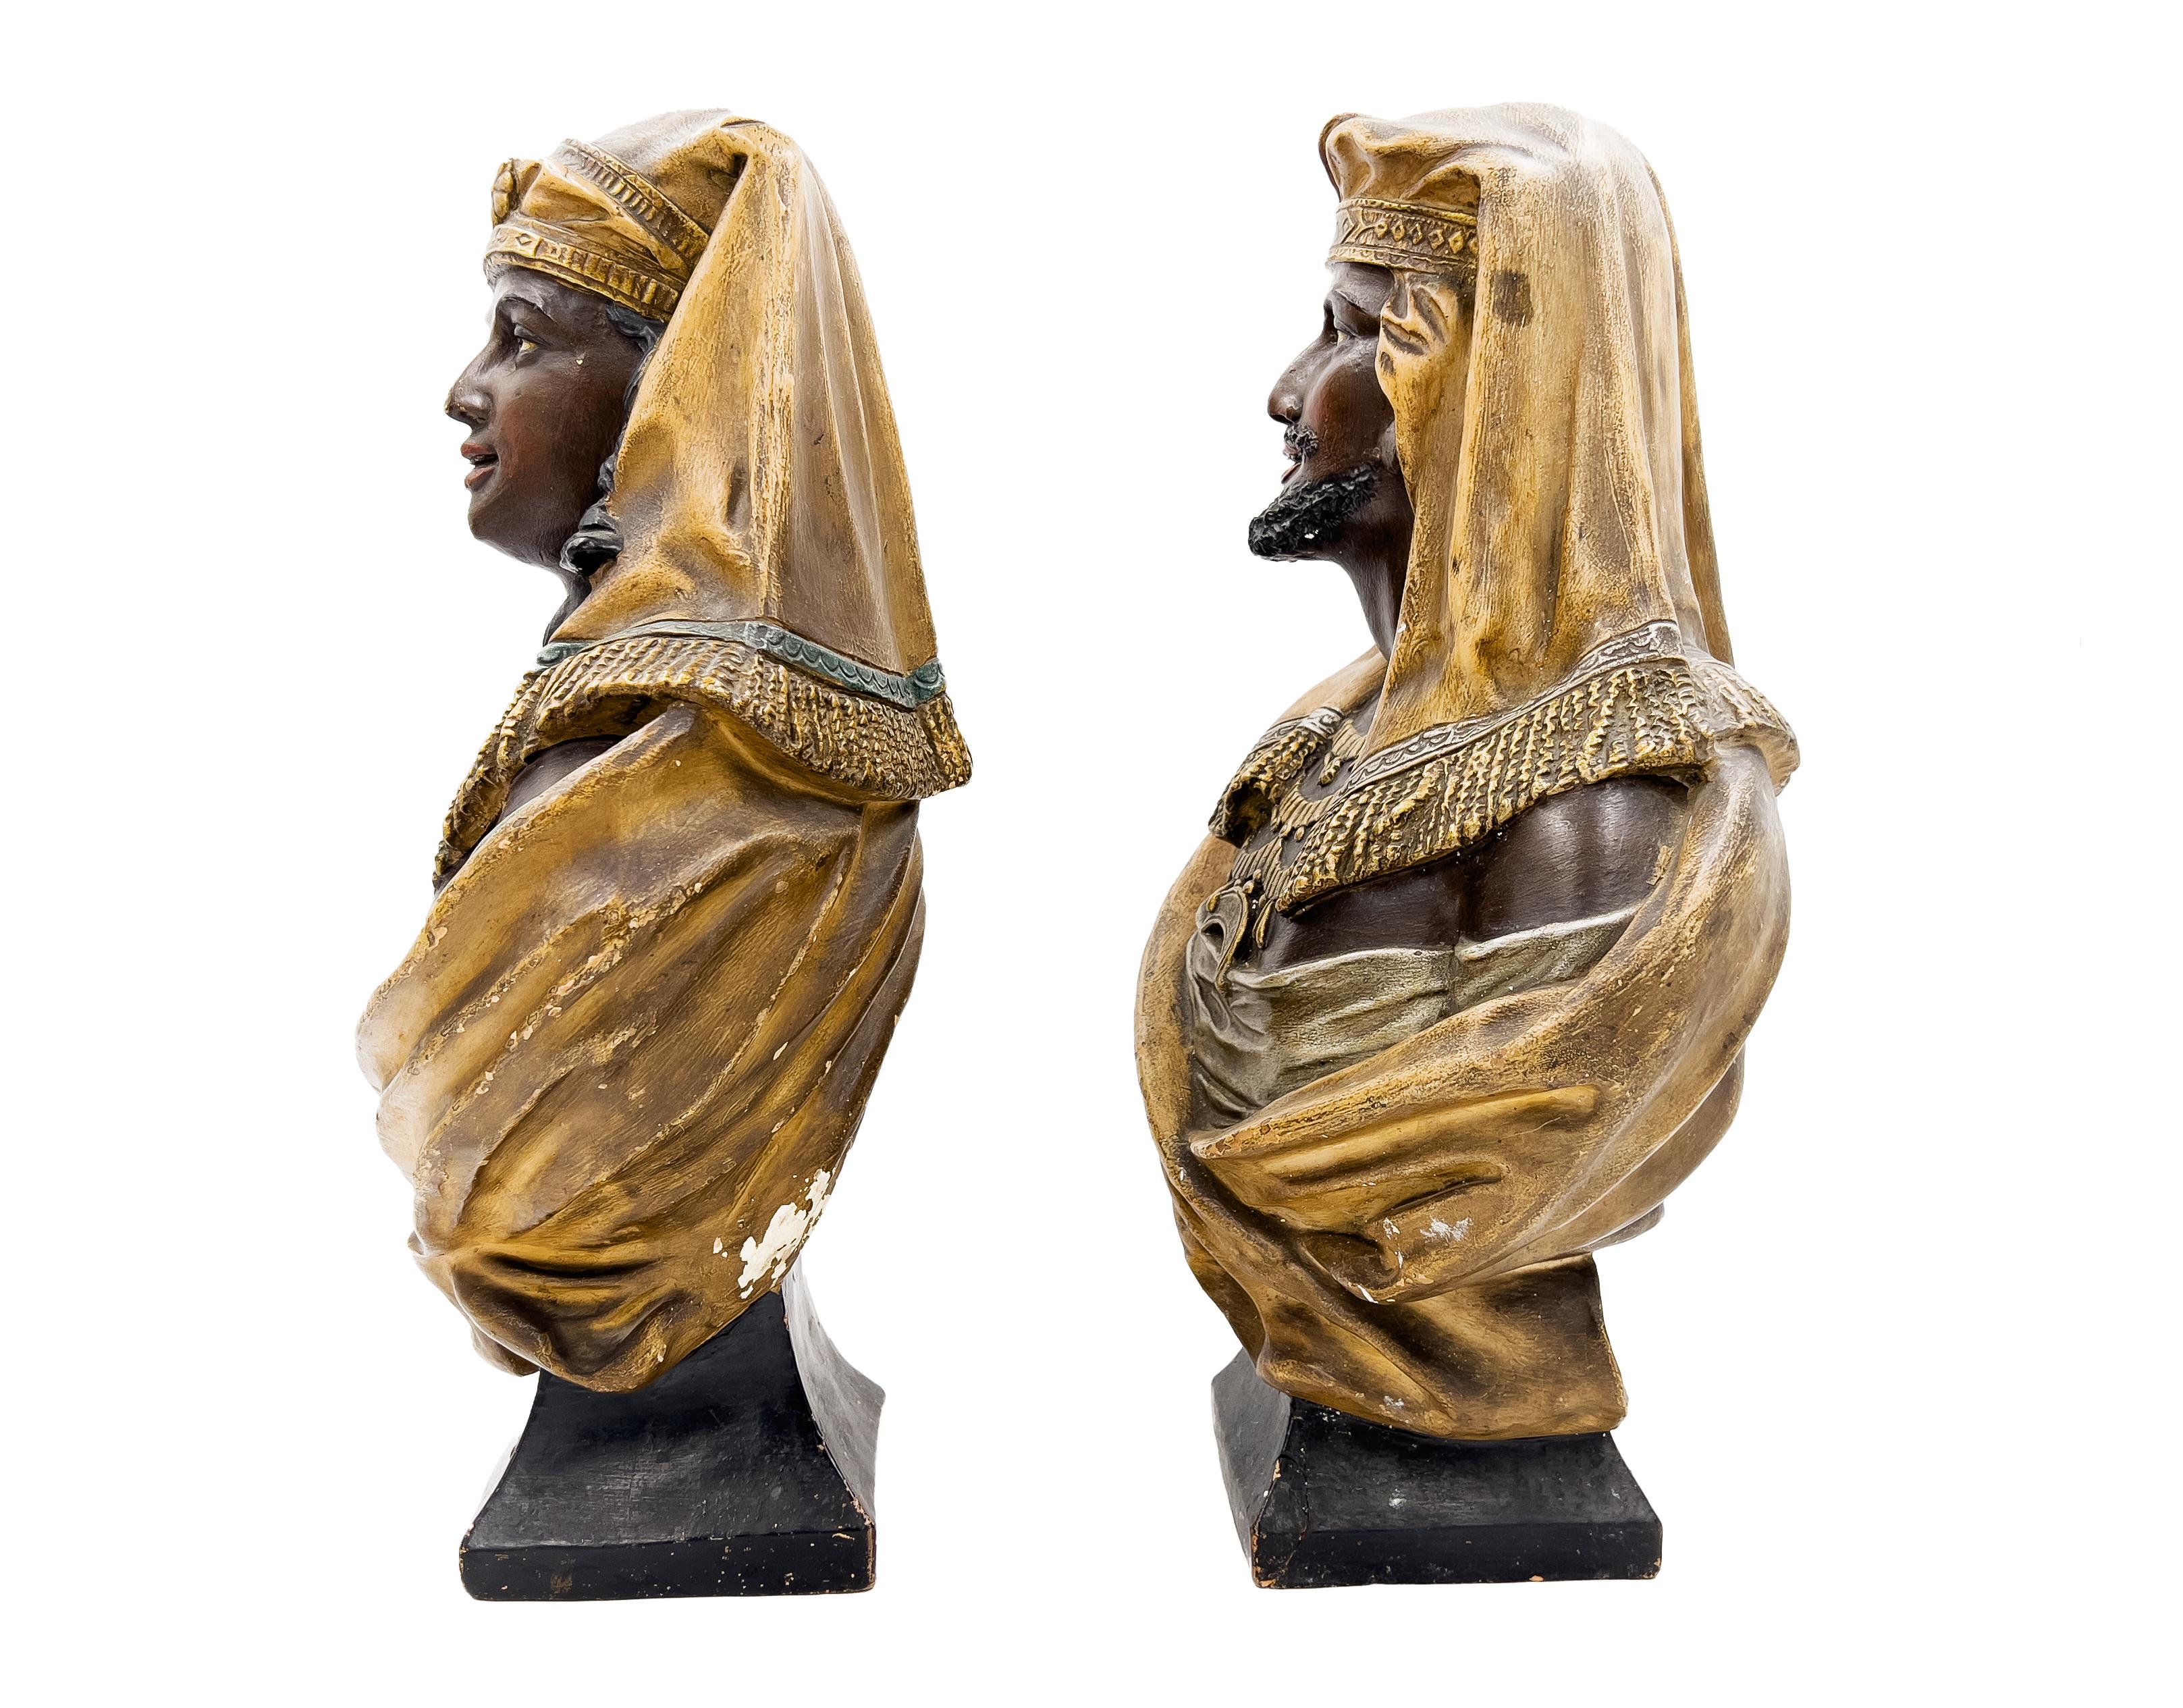 Paar Terrakotta-Büsten aus dem späten 19. Jahrhundert mit orientalischen Figuren, beide Büsten tragen ein Kopftuch und eine Halskette.